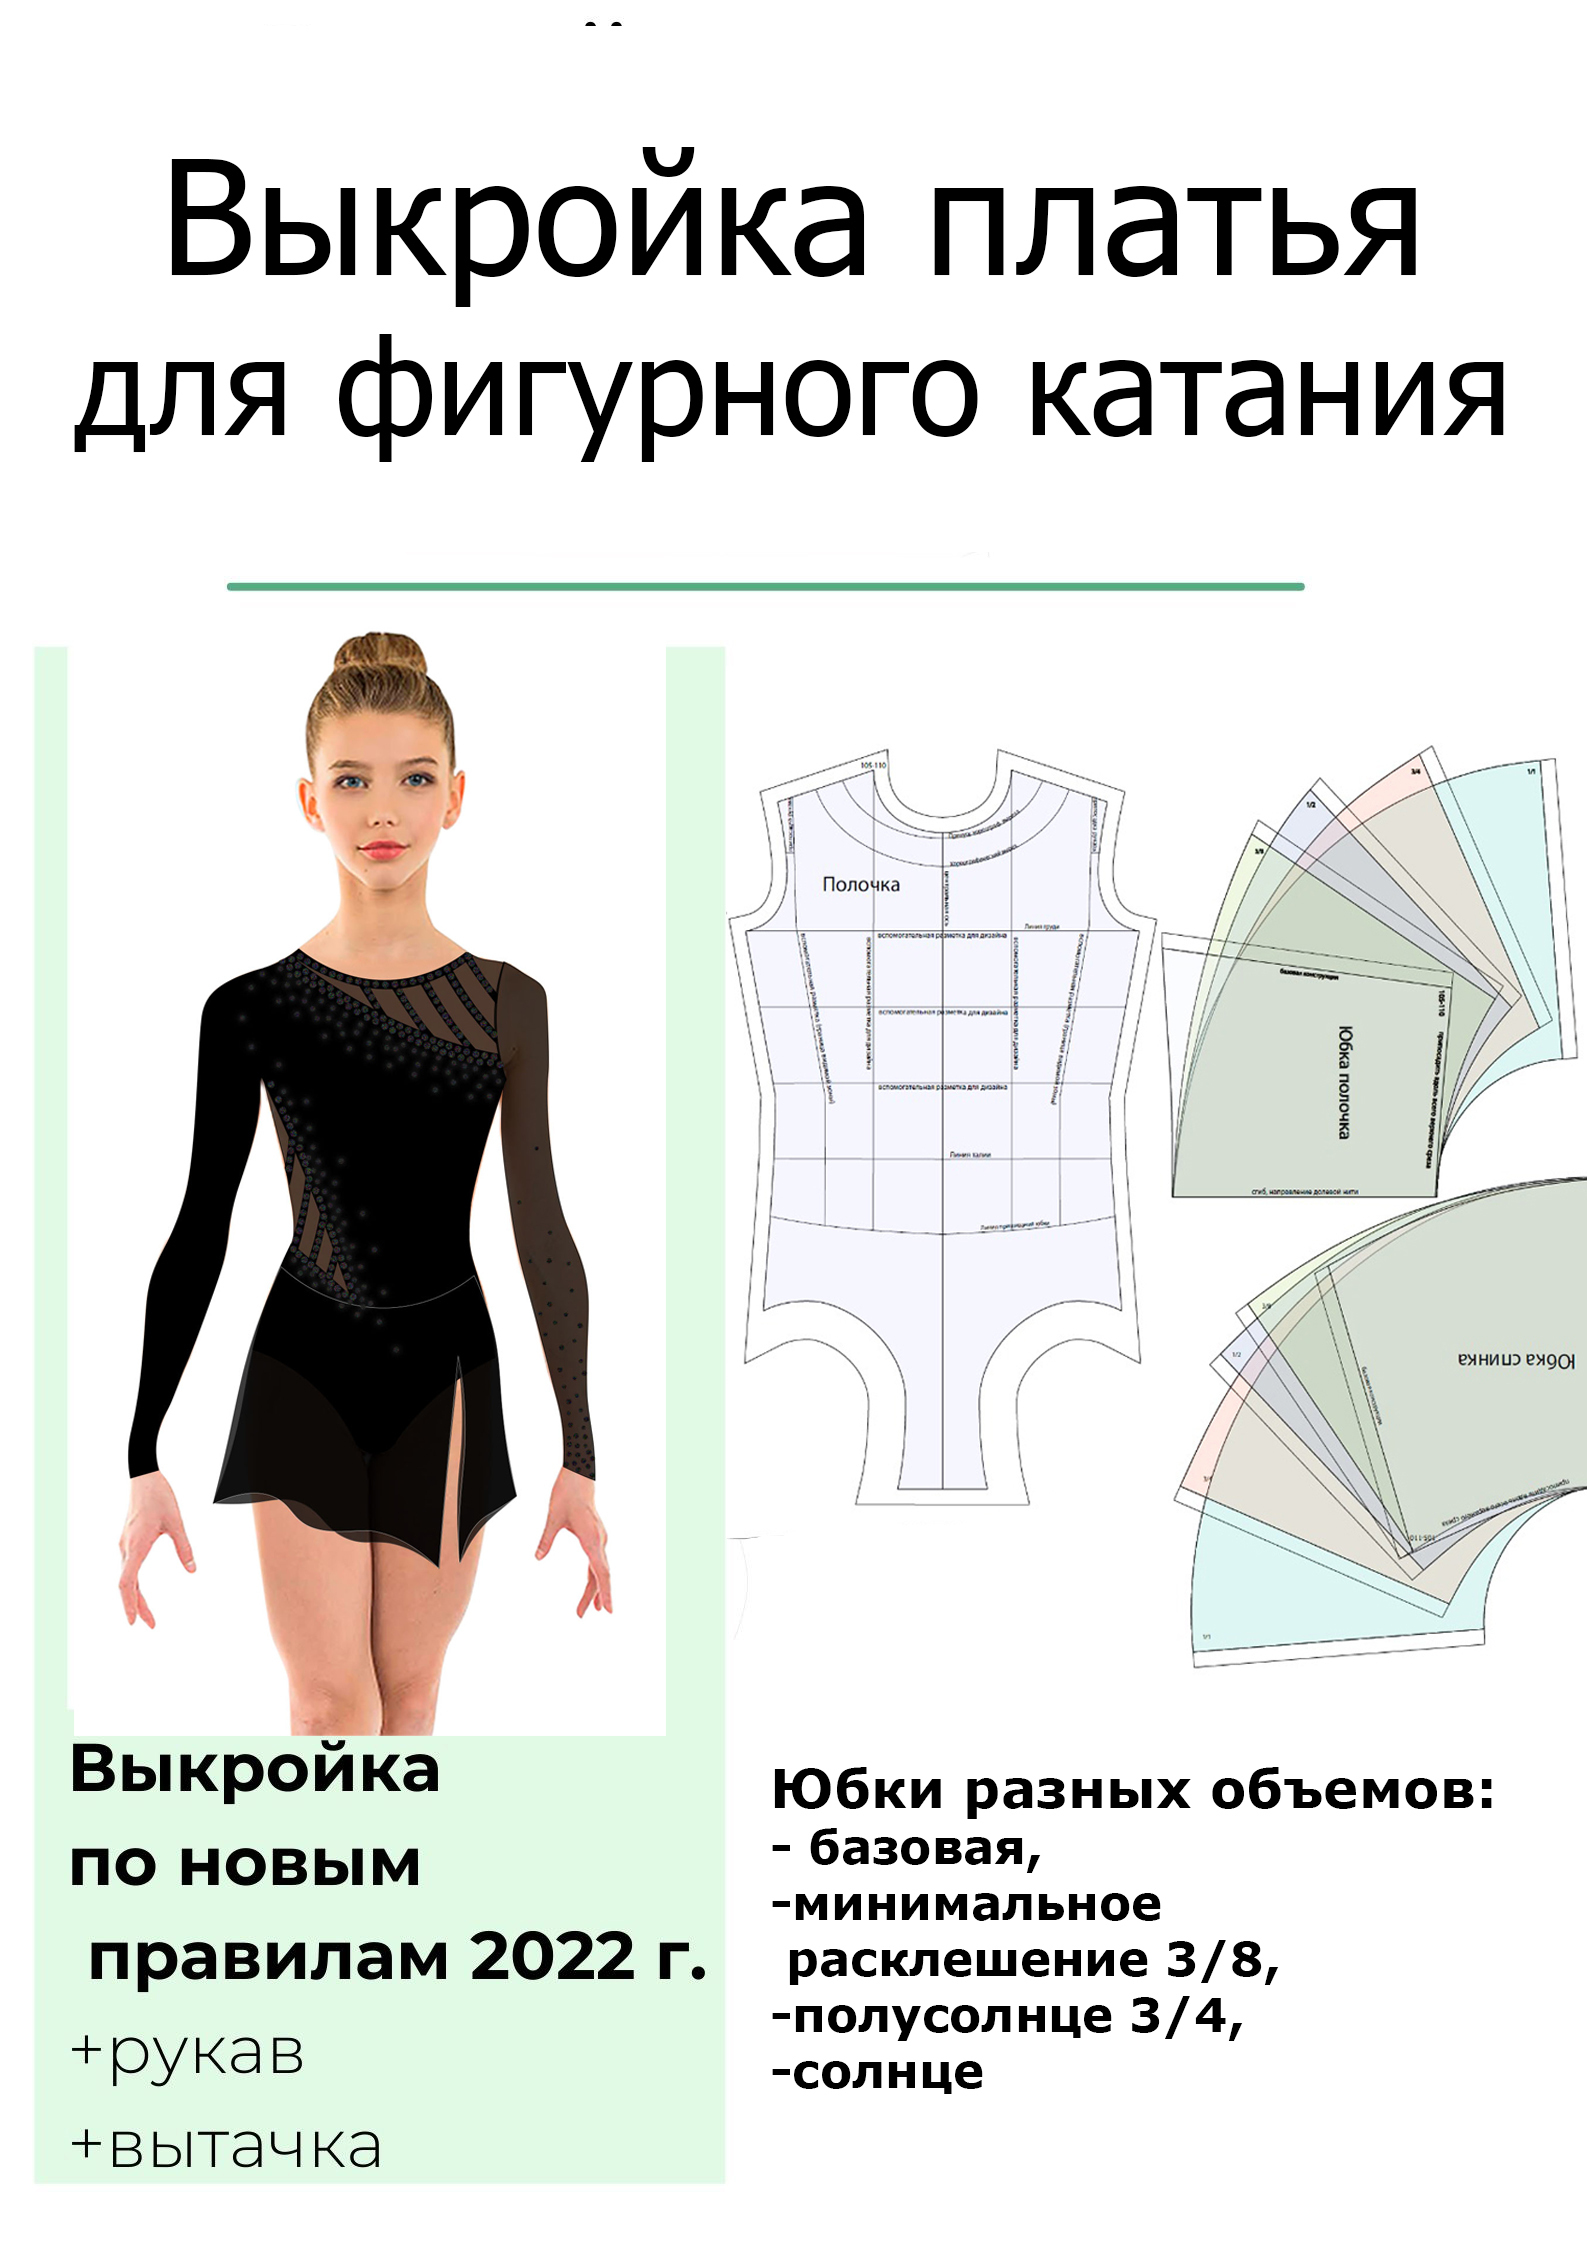 Бальное платье с открытой спиной сшито на курсах кроя и шитья ремонты-бмв.рф